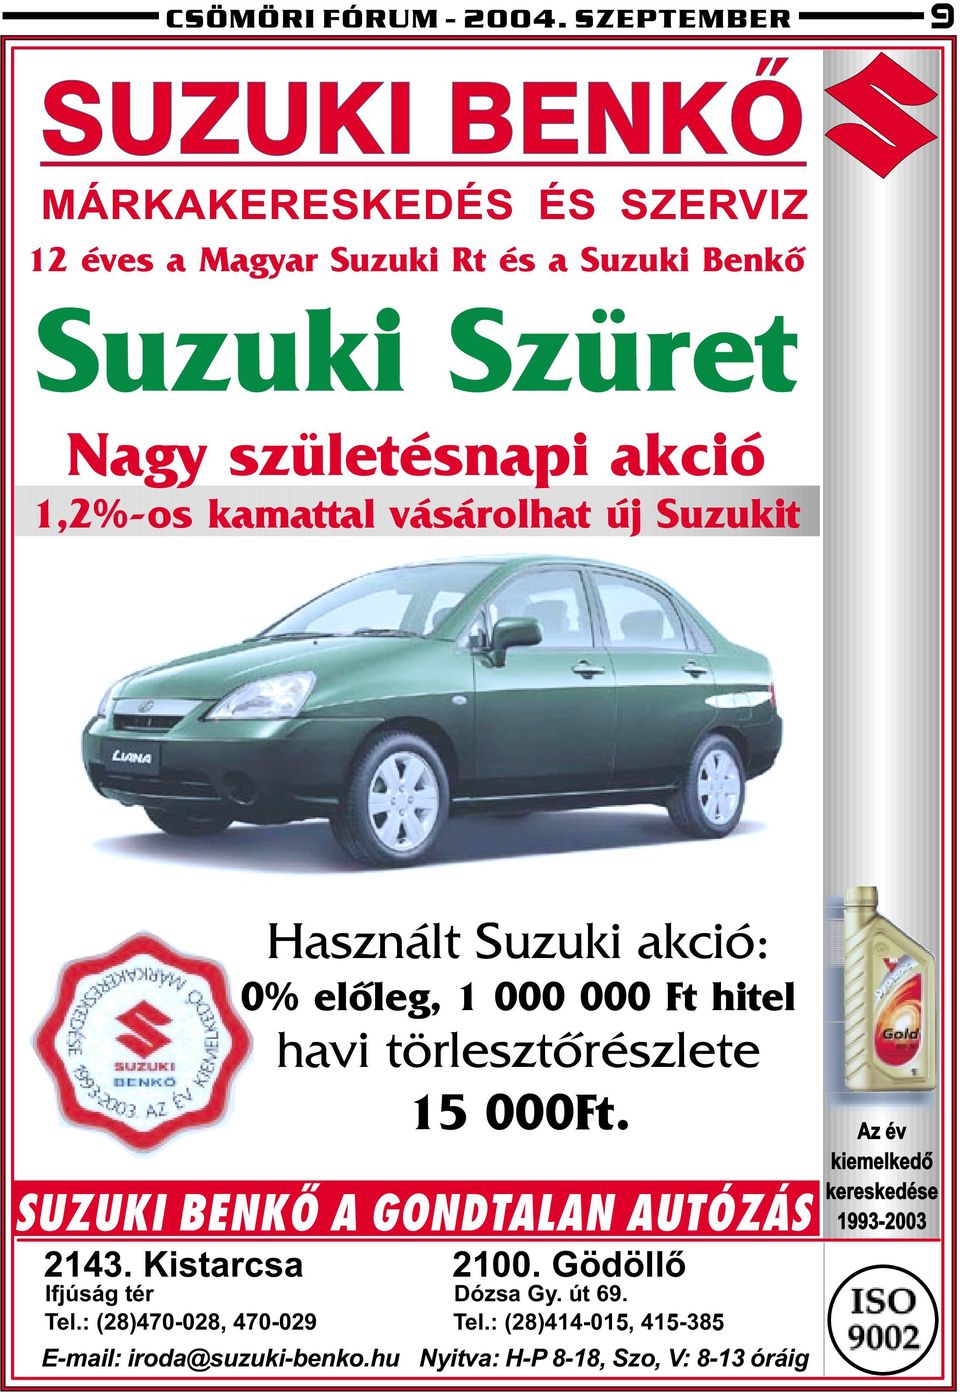 akció 1,2%-os kamattal vásárolhat új Suzukit Használt Suzuki akció: 0% elõleg, 1 000 000 Ft hitel havi törlesztõrészlete 15 000Ft.